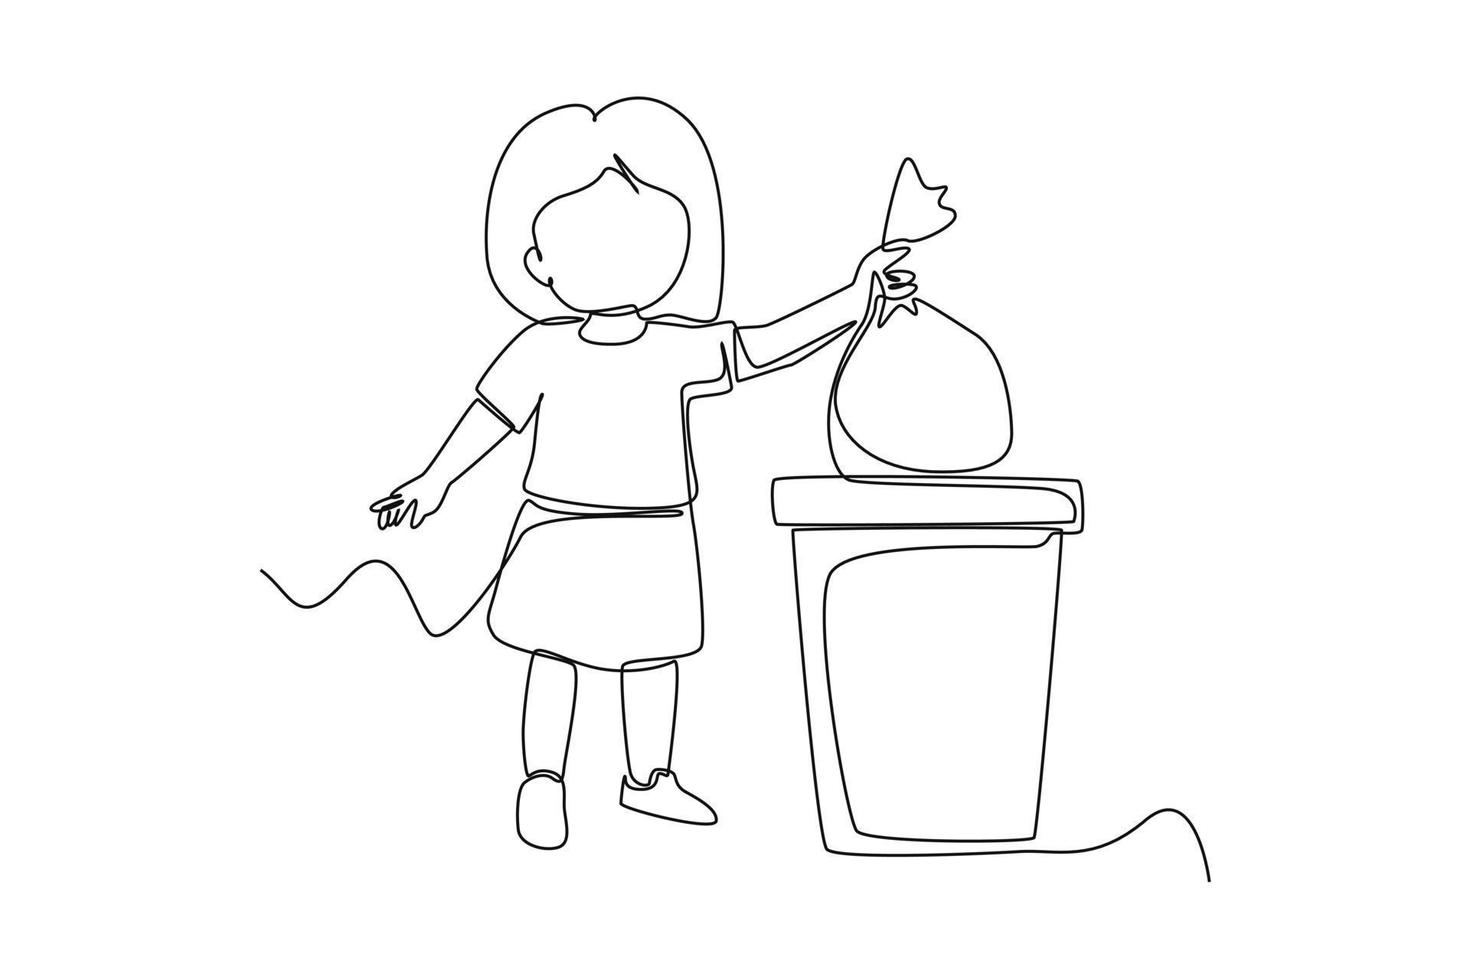 solteiro 1 linha desenhando pequeno criança lançar Lixo para Lixo bin. cuidados de saúde às escola conceito. contínuo linha desenhar Projeto gráfico vetor ilustração.